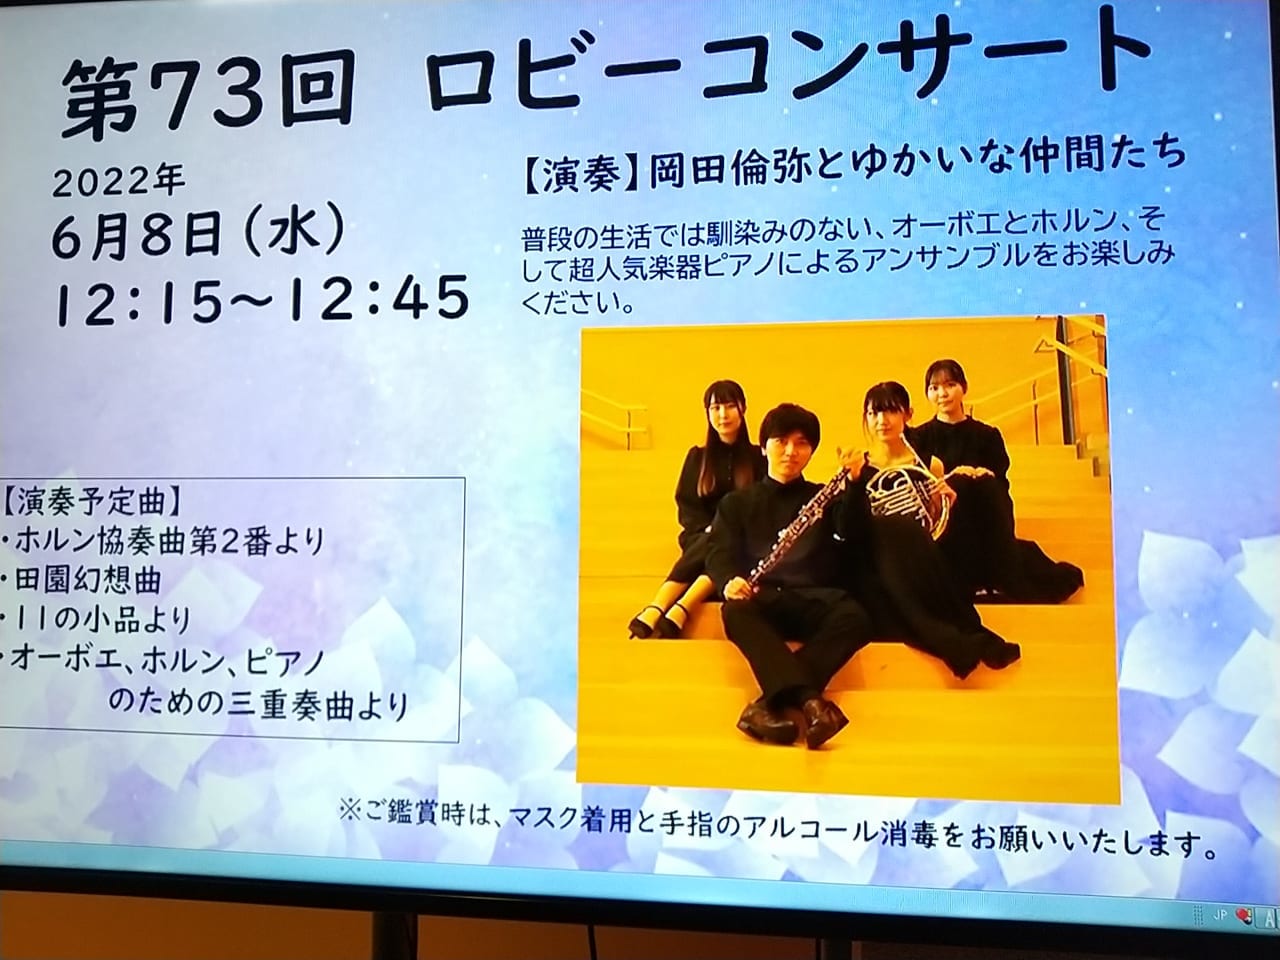 「東広島芸術文化ホールくらら」主催の第73回ロビーコンサート